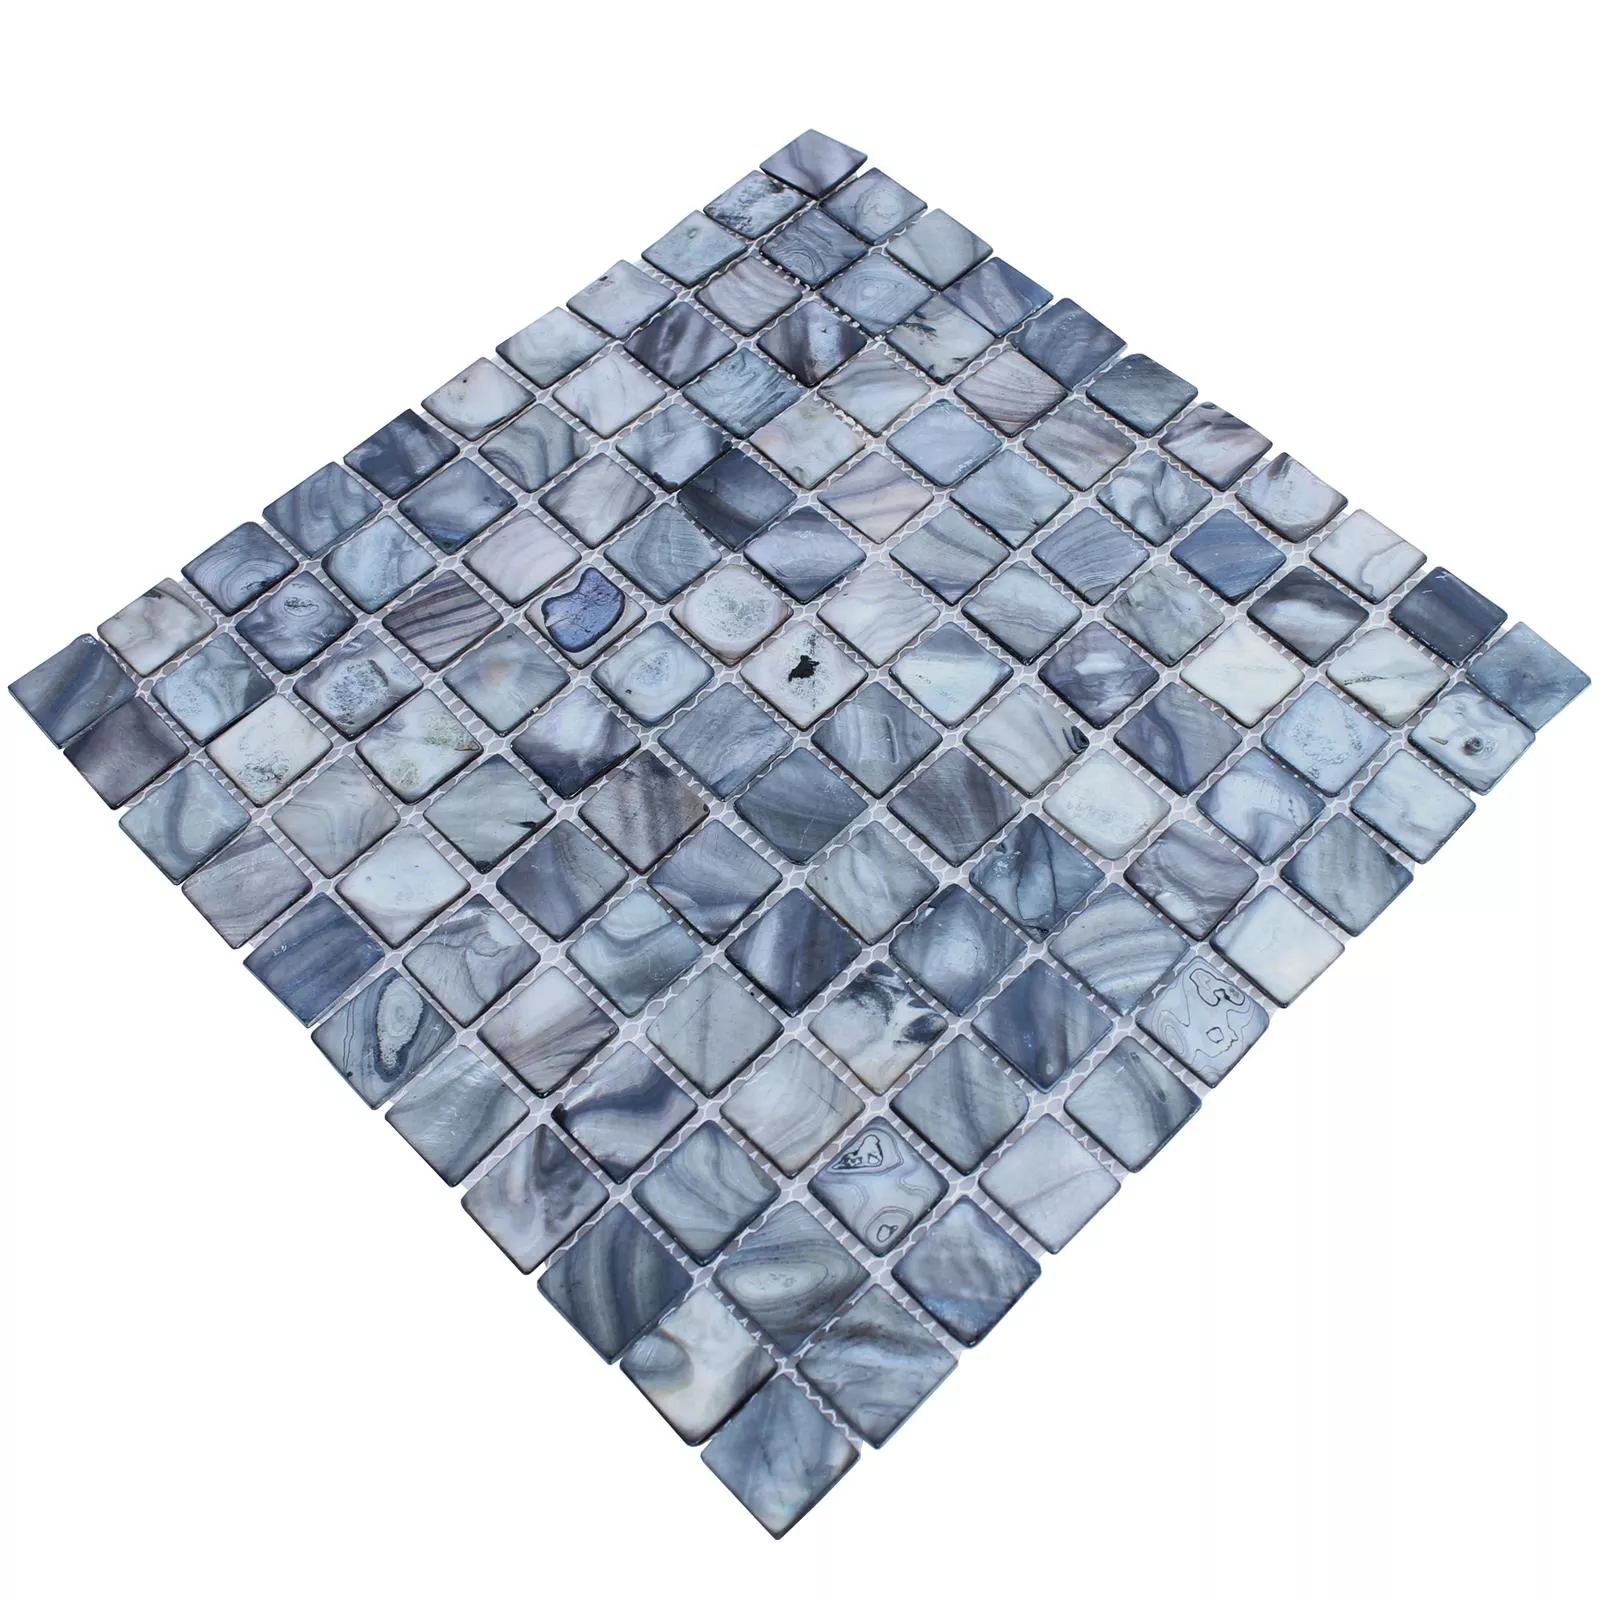 Mosaik Fliser Glas Nacre Effekt Shell